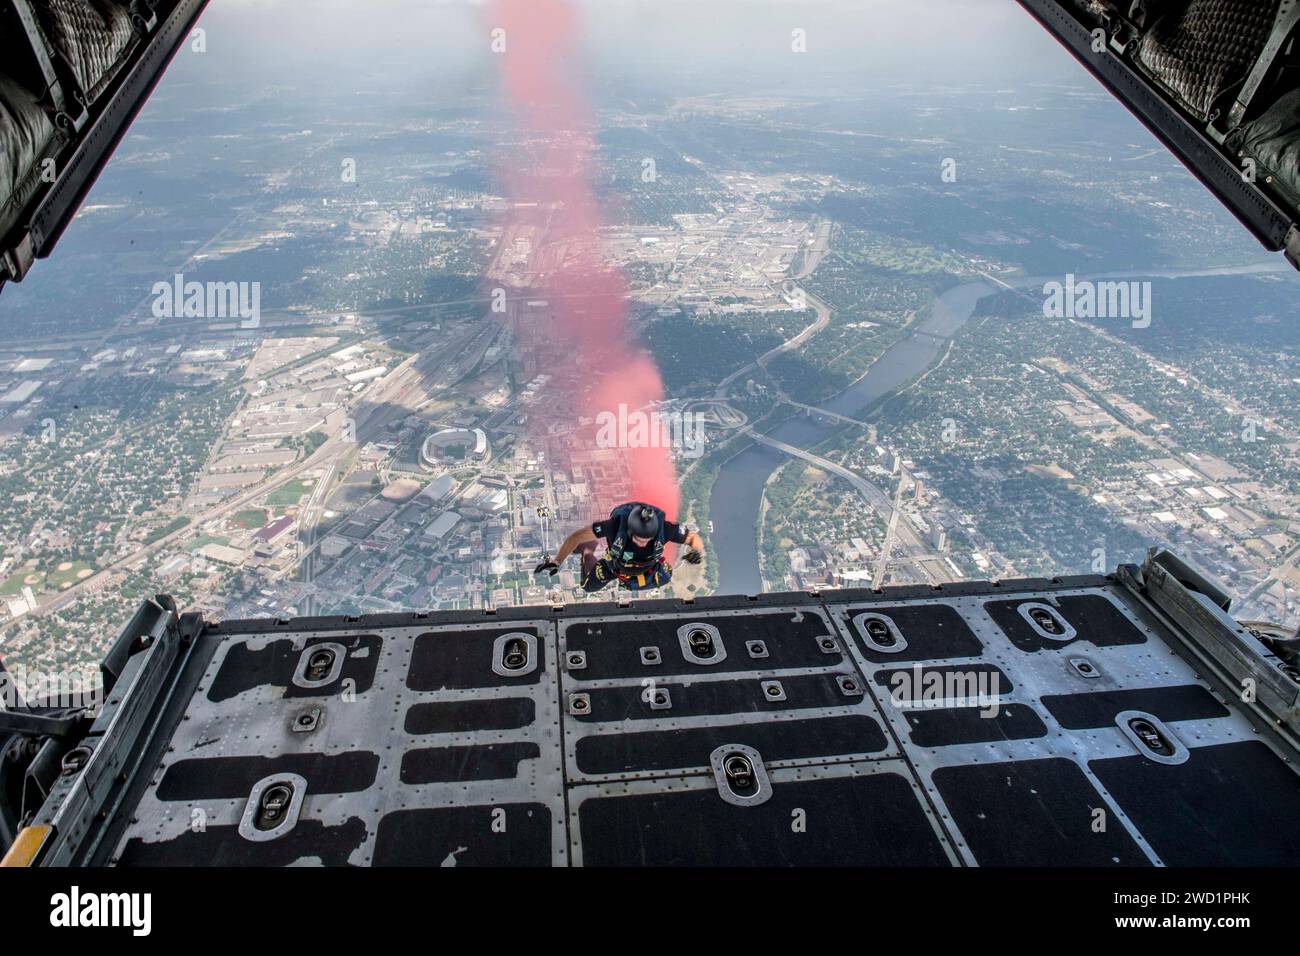 Ein Mitglied des Fallschirmdemonstrationsteams der US Navy spürt Rauch auf, während er aus einem C-130 Hercules springt. Stockfoto